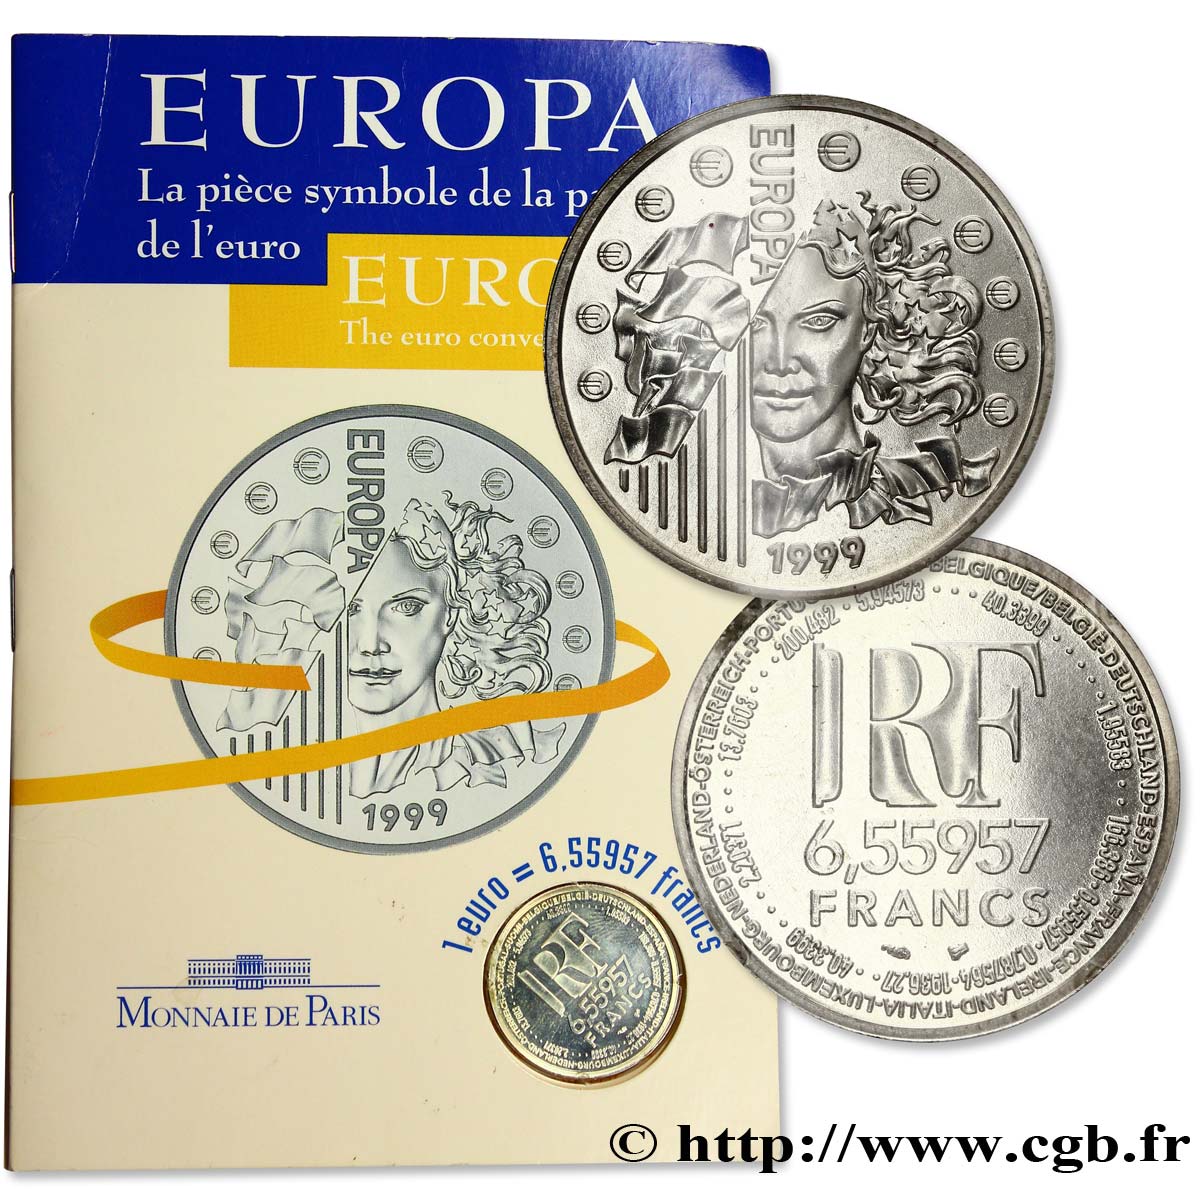 Brillant Universel 6,55957 francs - La parité 1999 Paris F.1250 2 MS 